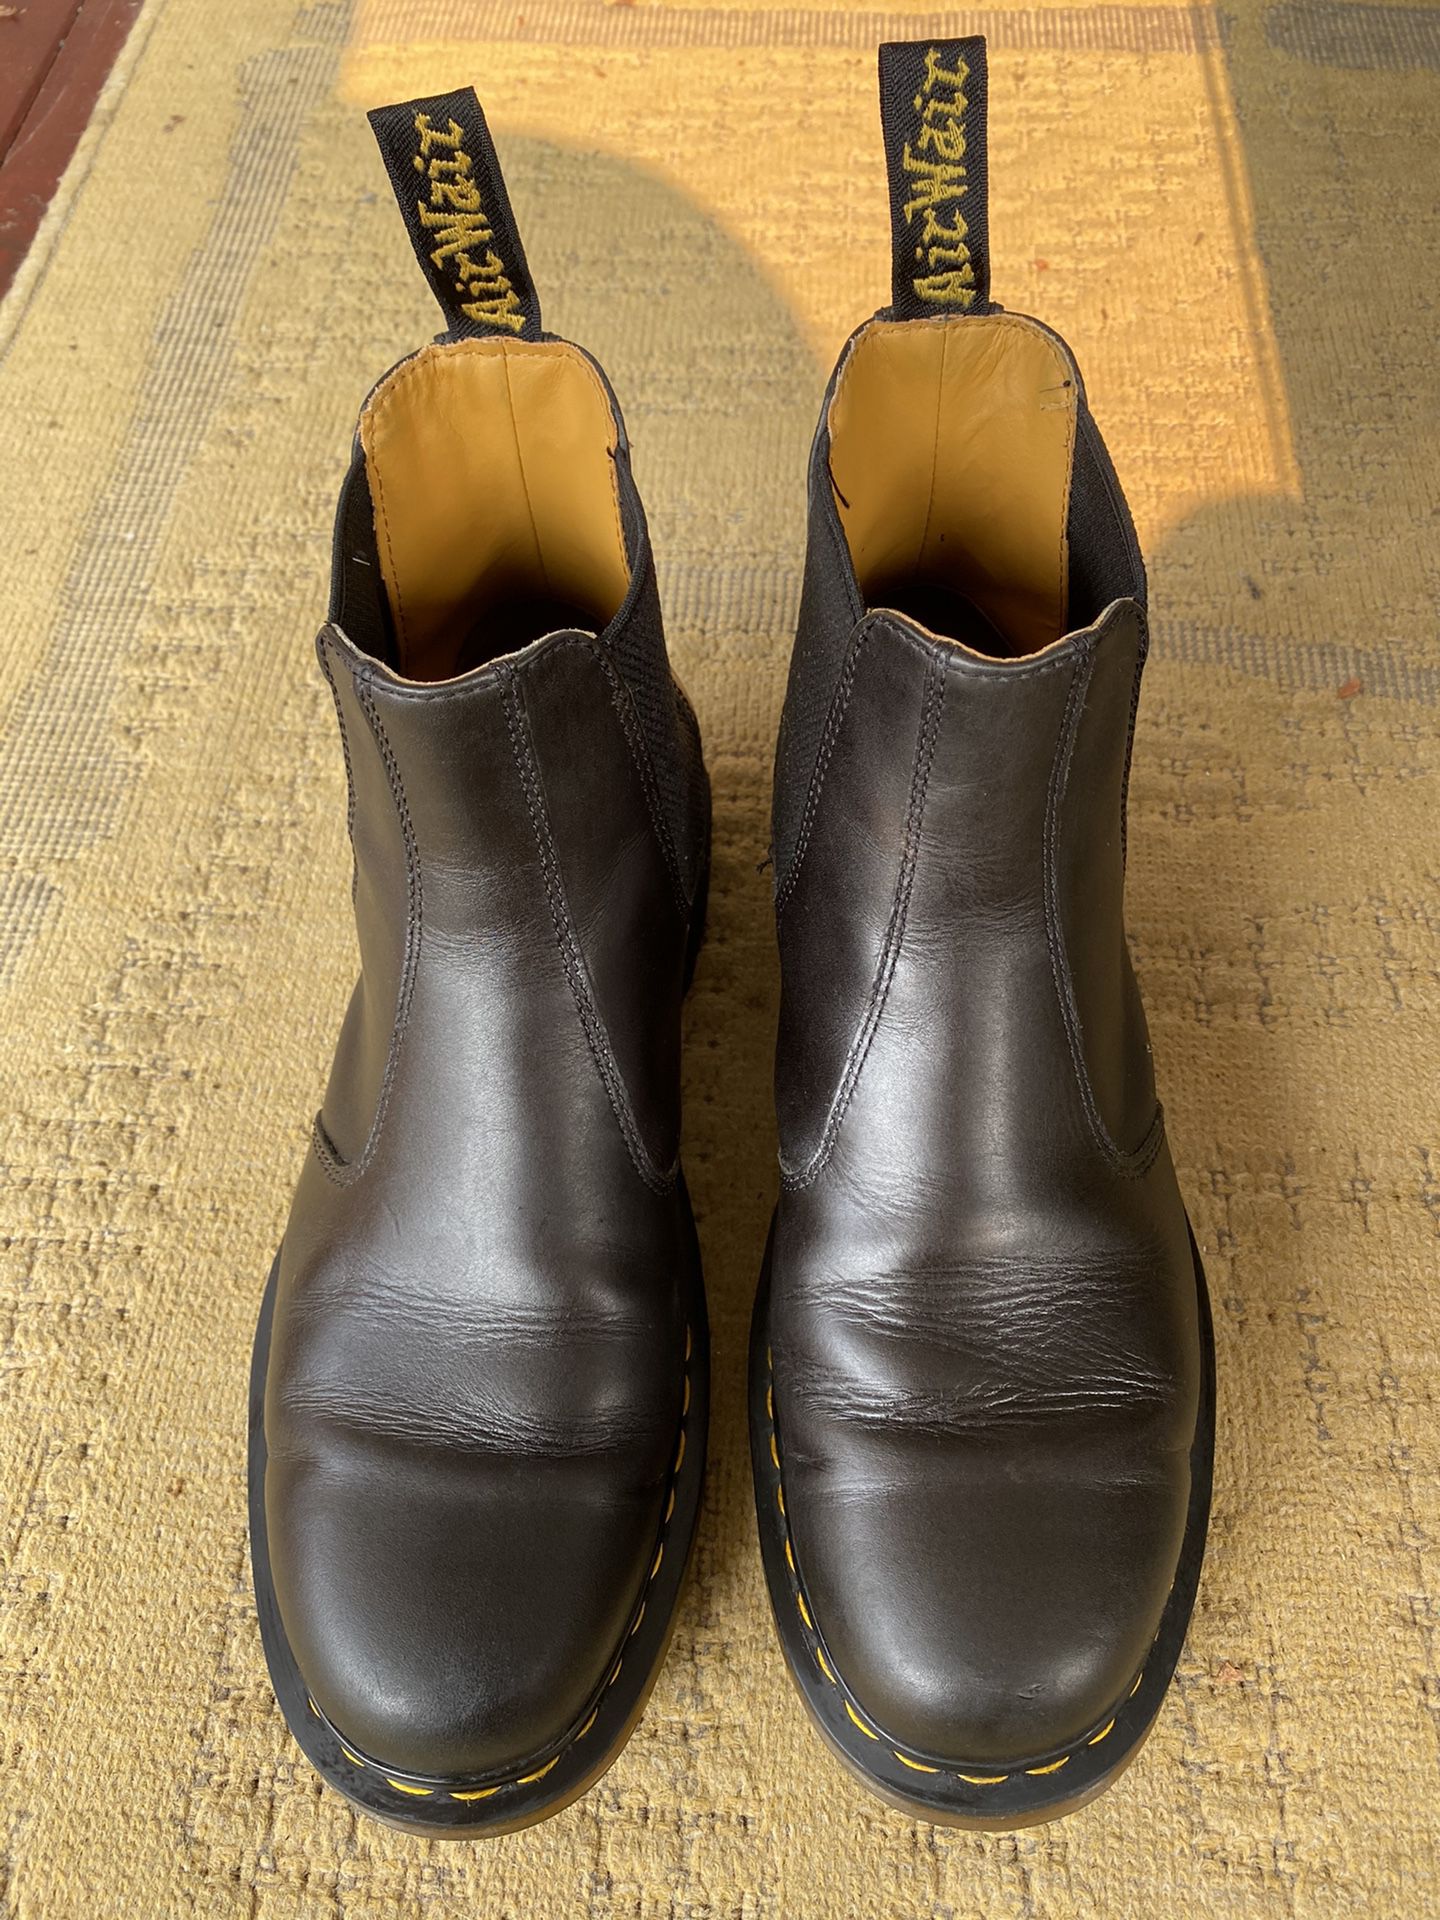 Doc Martens Chelsea boots, black, 12 M US